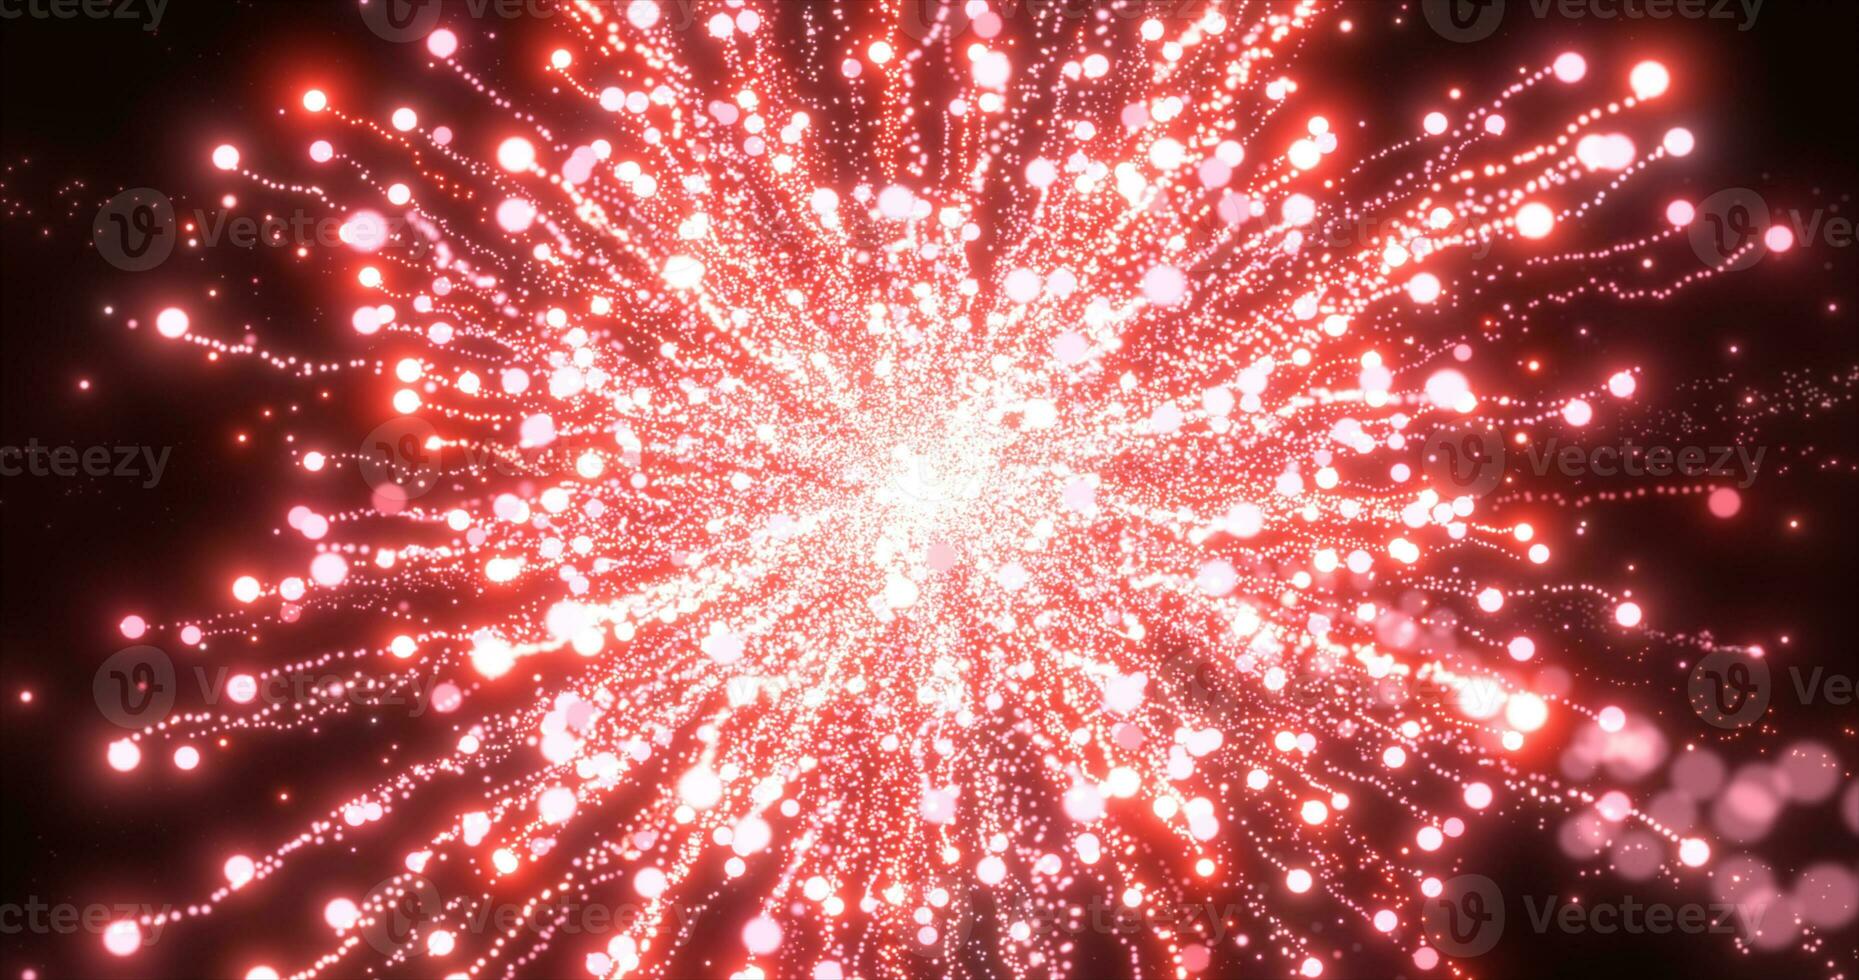 abstrato vermelho energia fogos de artifício partícula saudação mágico brilhante brilhando futurista oi-tech com borrão efeito e bokeh fundo foto